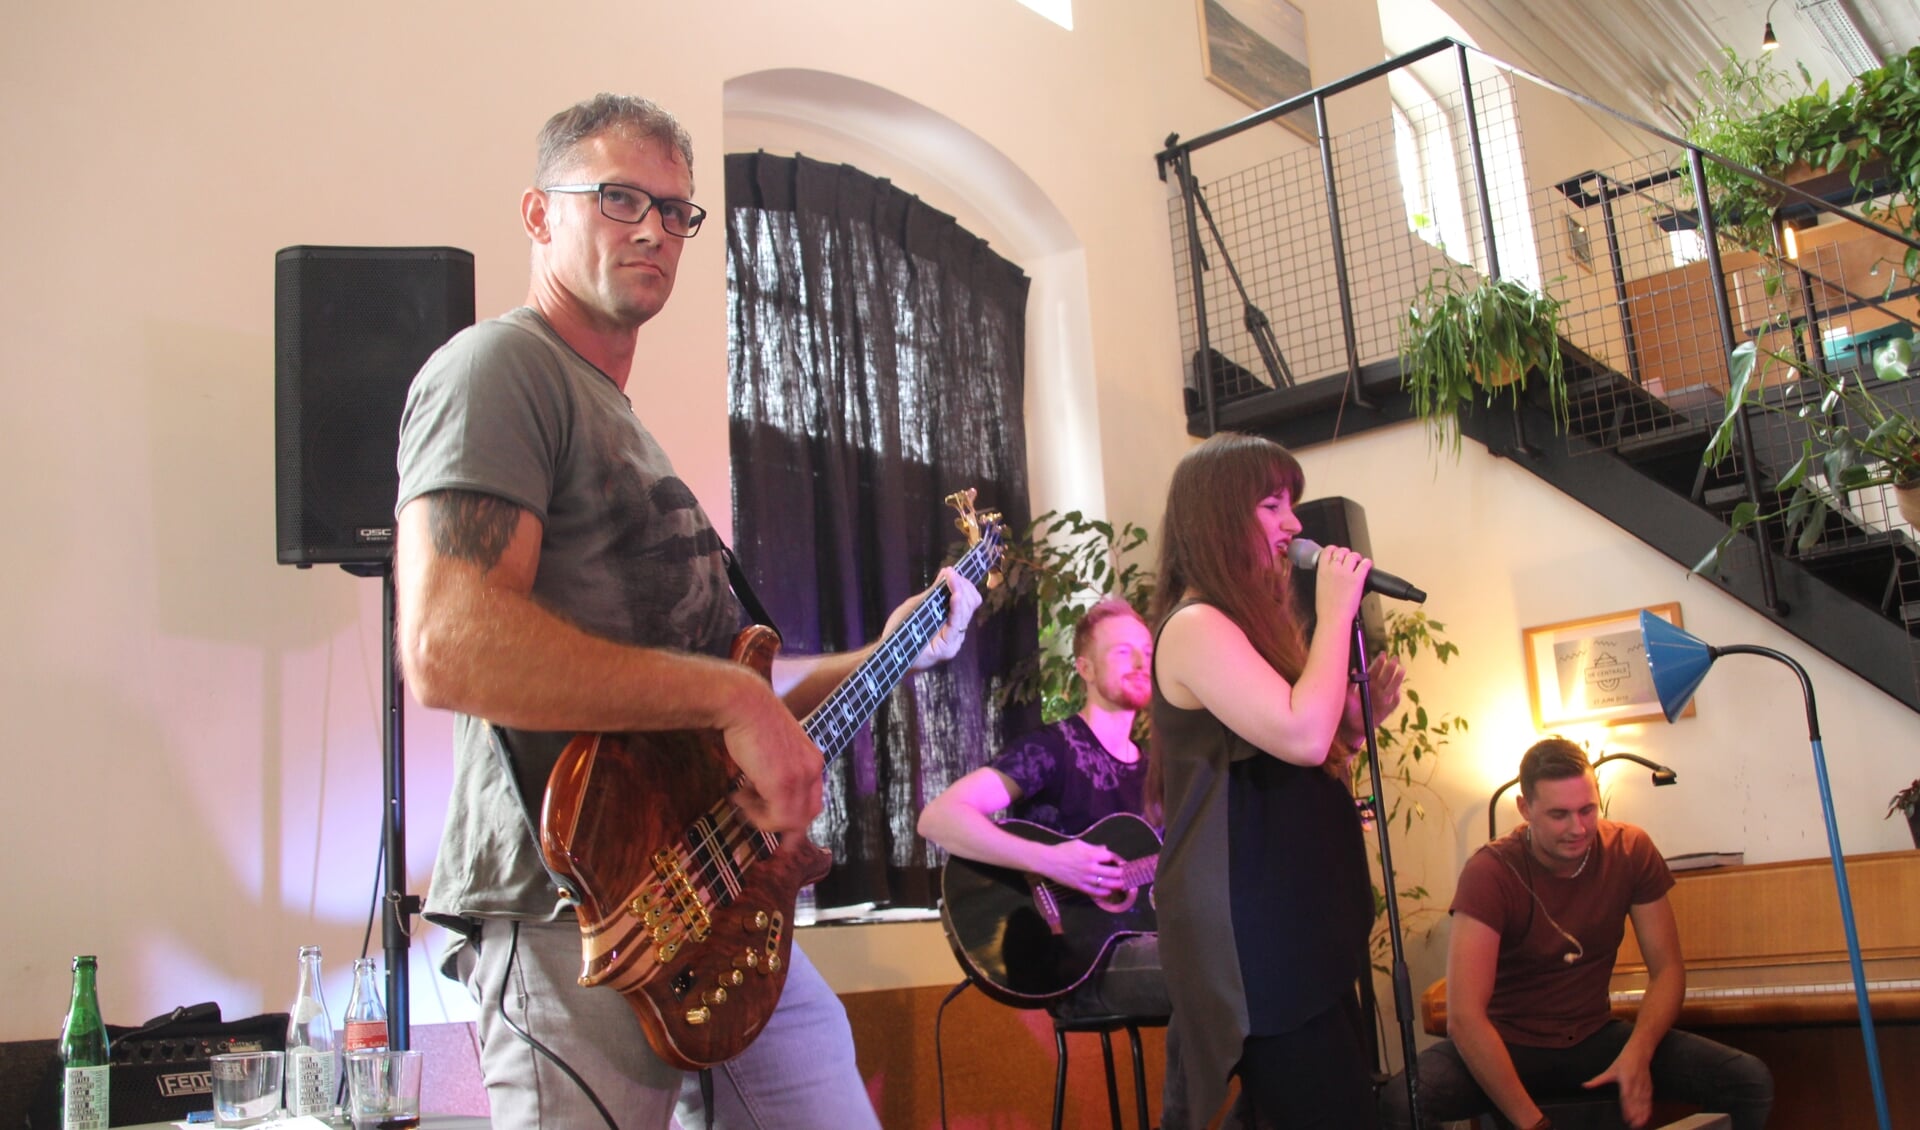 De poprockband Batcrab verzorgde het eerste gratis Delft op Zondag miniconcert afgelopen zondag